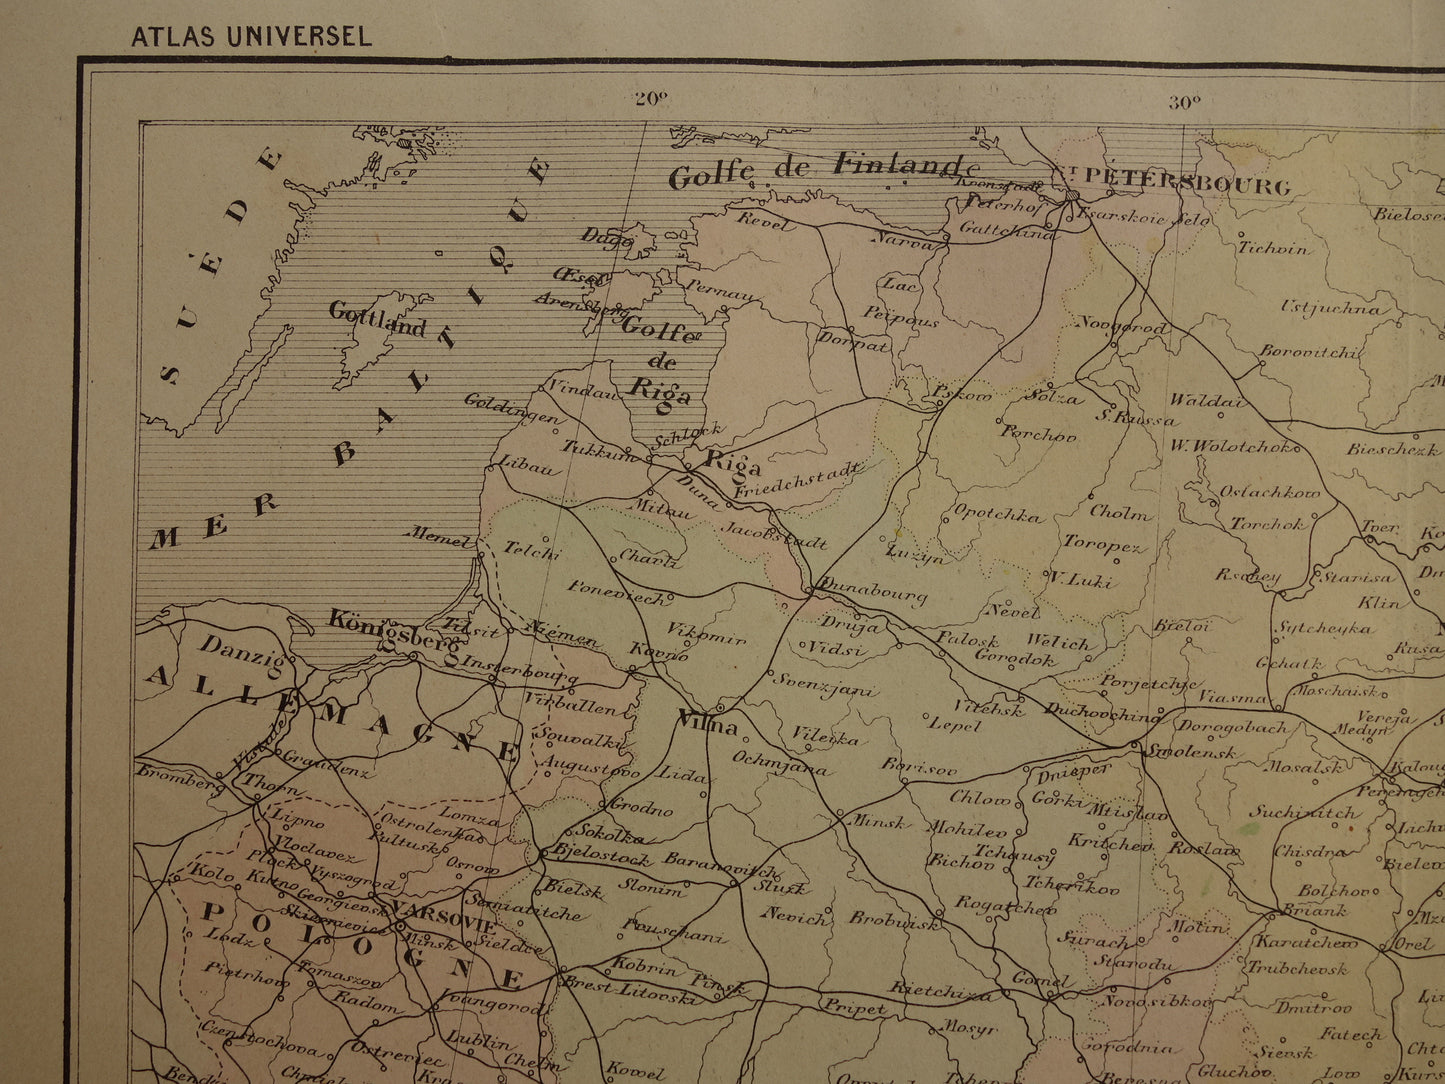 RUSLAND Oude kaart van Rusland Oekraïne Moskou uit het jaar 1896 historische landkaart Russische Rijk Europa oude vintage kaarten